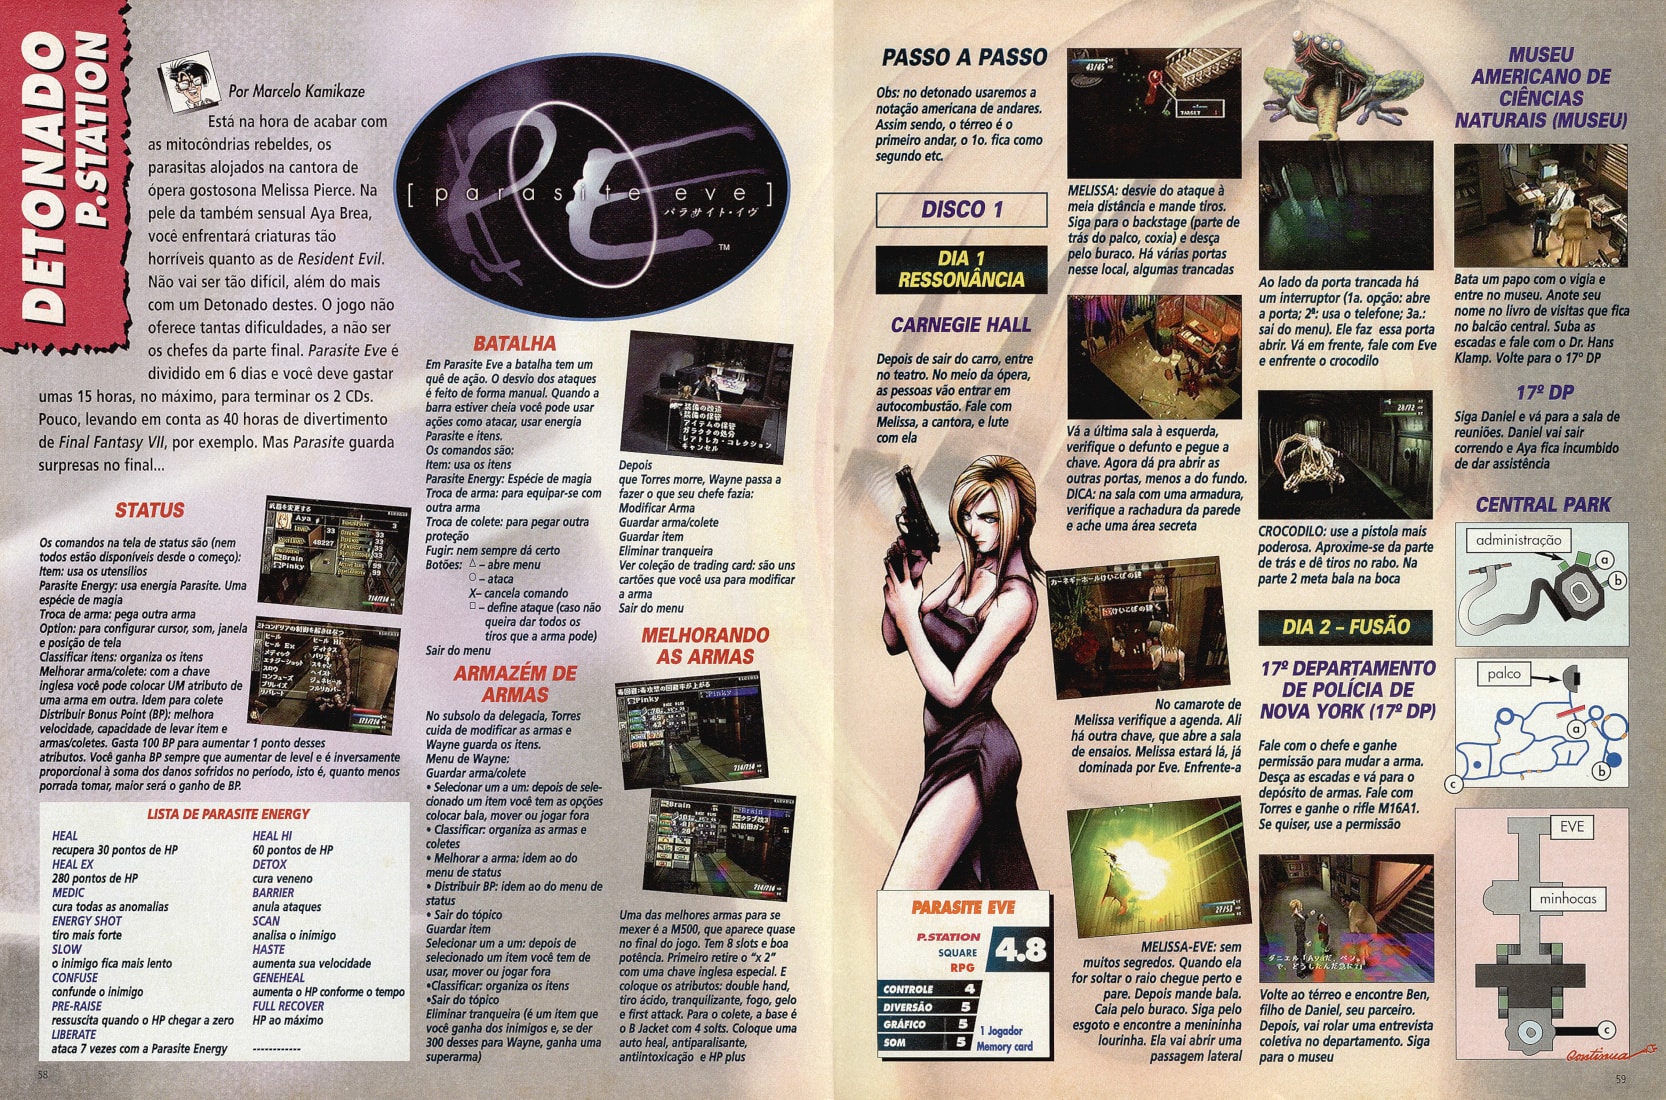 Revista Super Game Power nº71 - Capa Parasite Eve 2